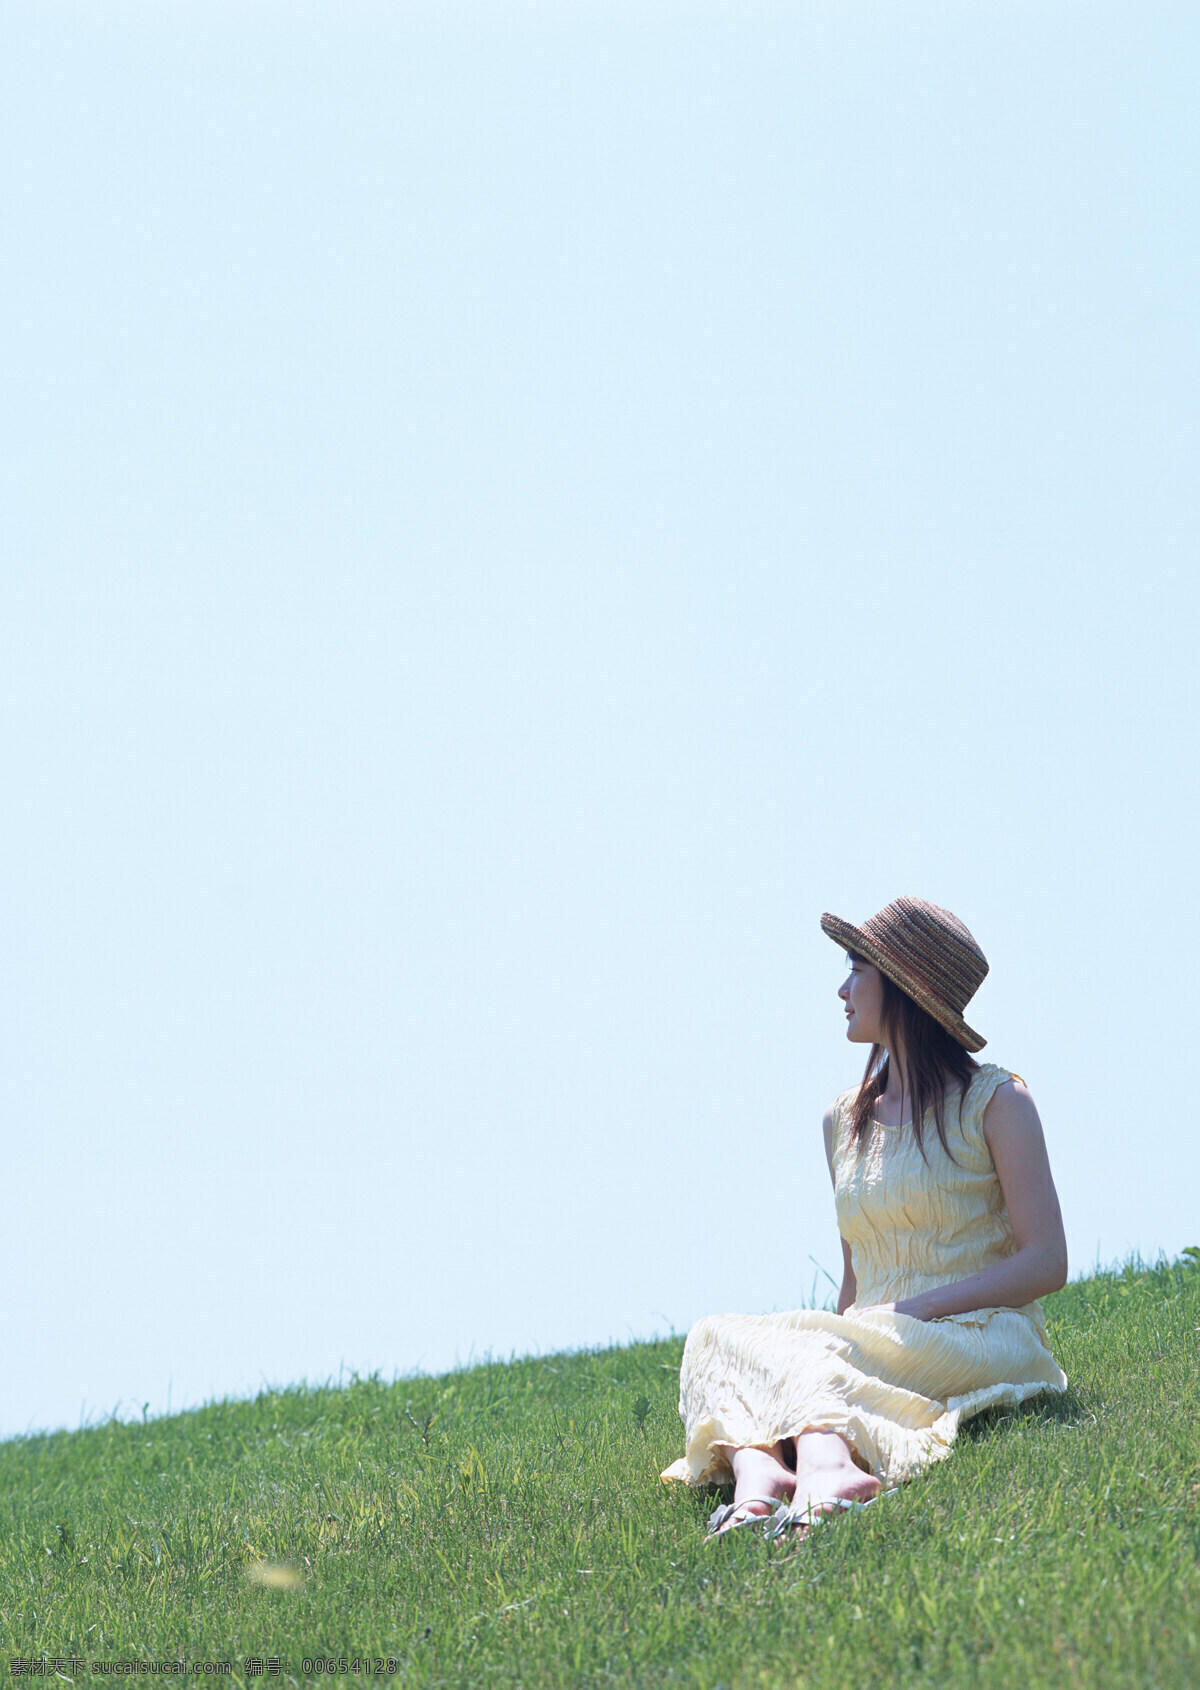 坐在 草地 上 女人 假日 休闲 干净 明媚 户外 旅行 人物 女性 意境 唯美 天空下 坐着 侧身 美女图片 人物图片